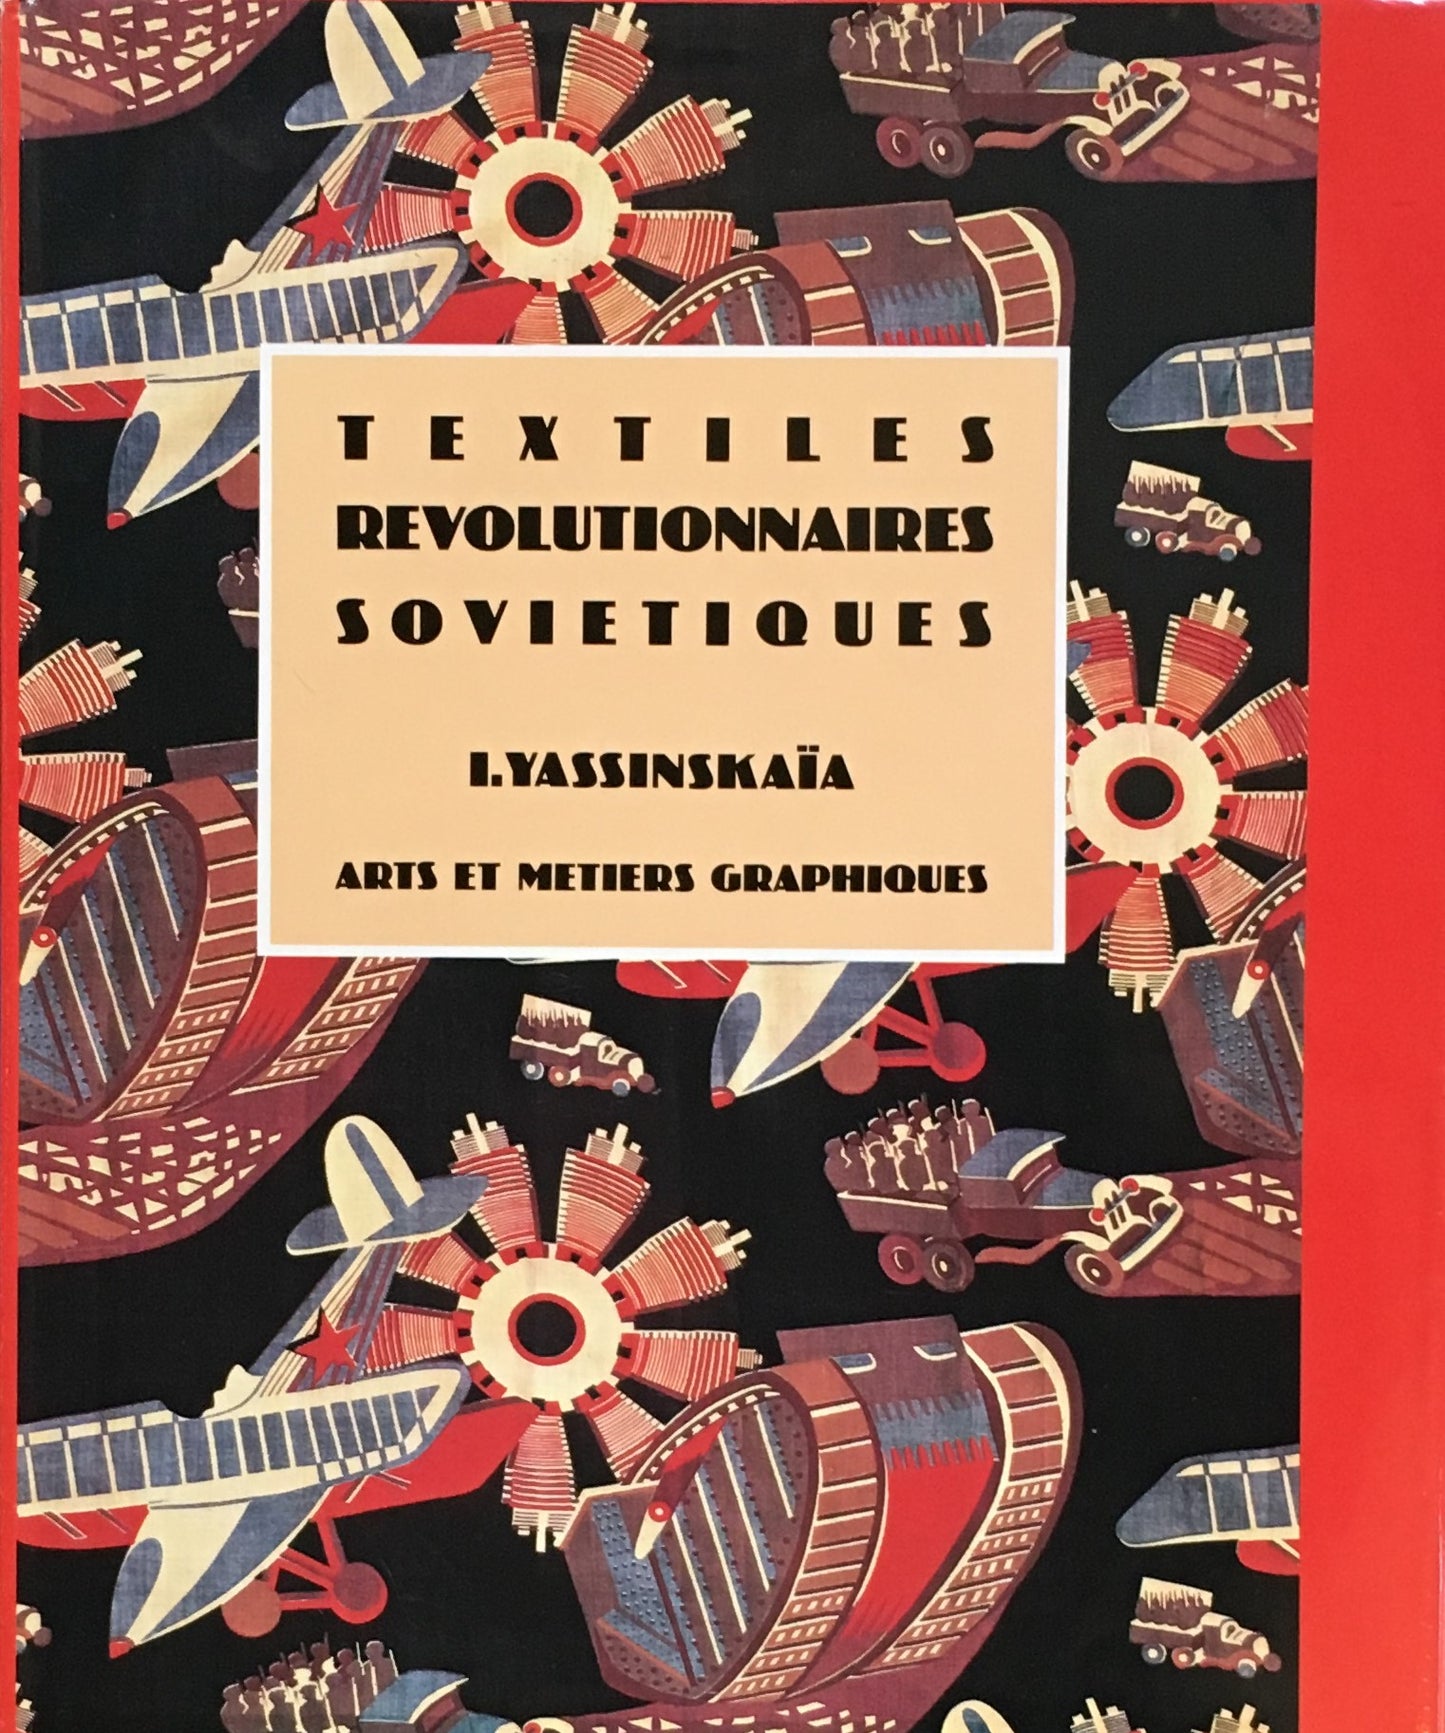 TEXTILES REVOLUTIONNAIRES SOVIETIQUES　arts et metiers graphiques I. Yassinskaia